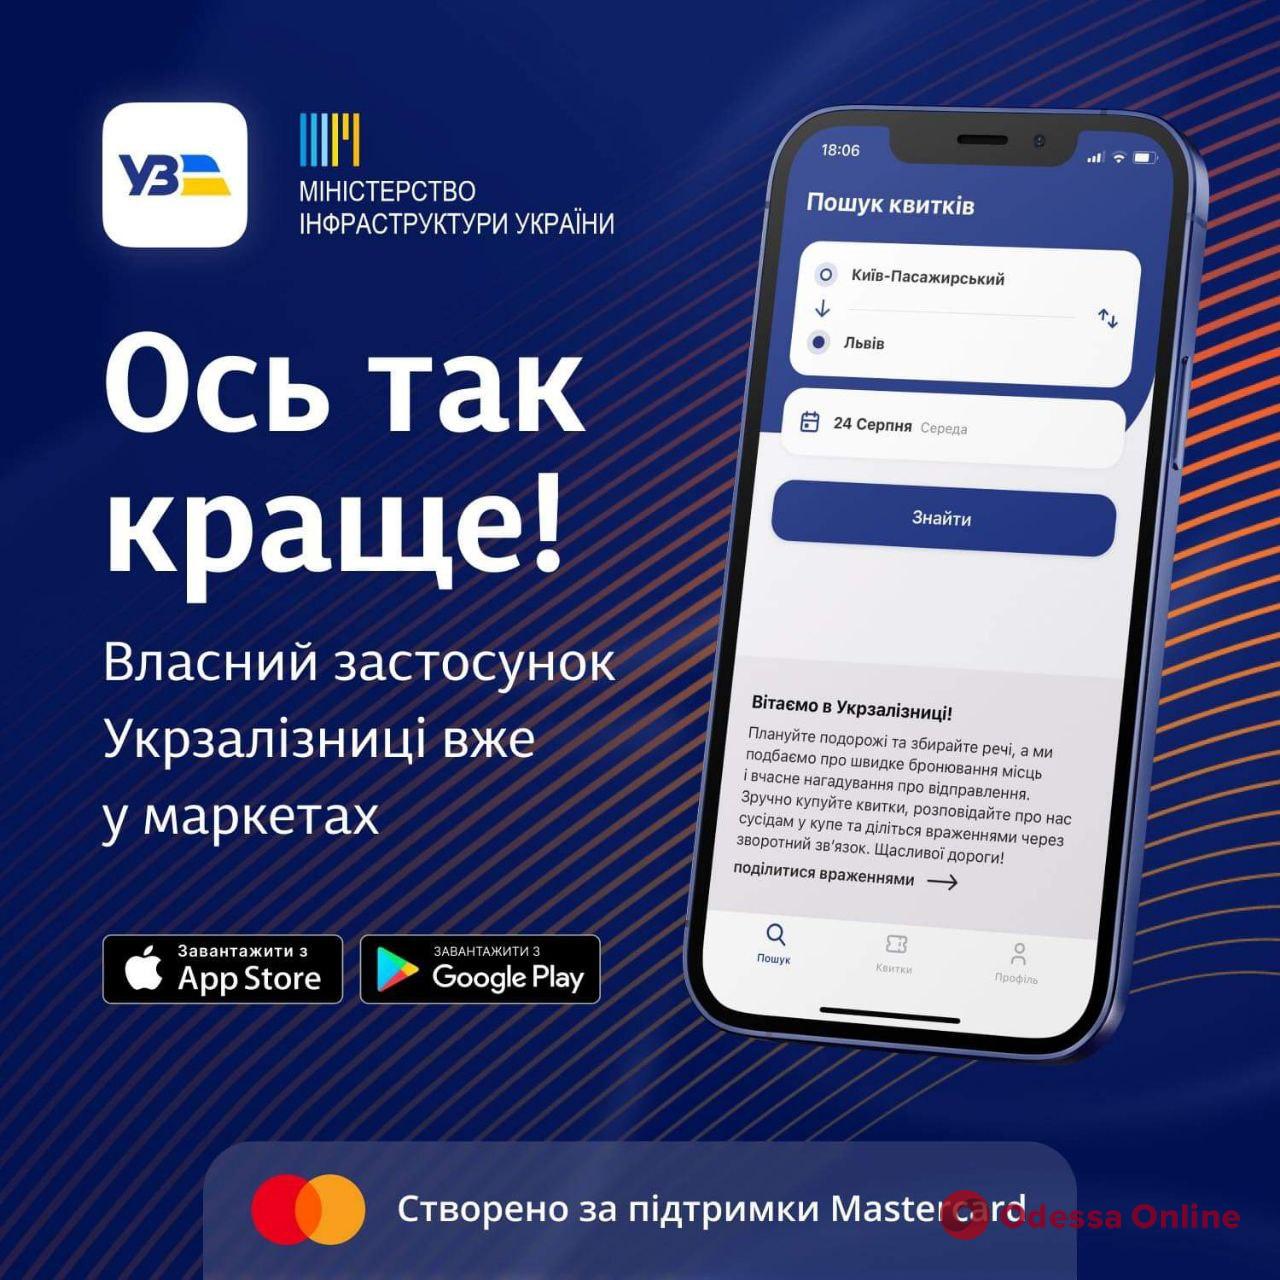 “Укрзалізниця” запустила мобільний застосунок для продажу квитків та інформування пасажирів